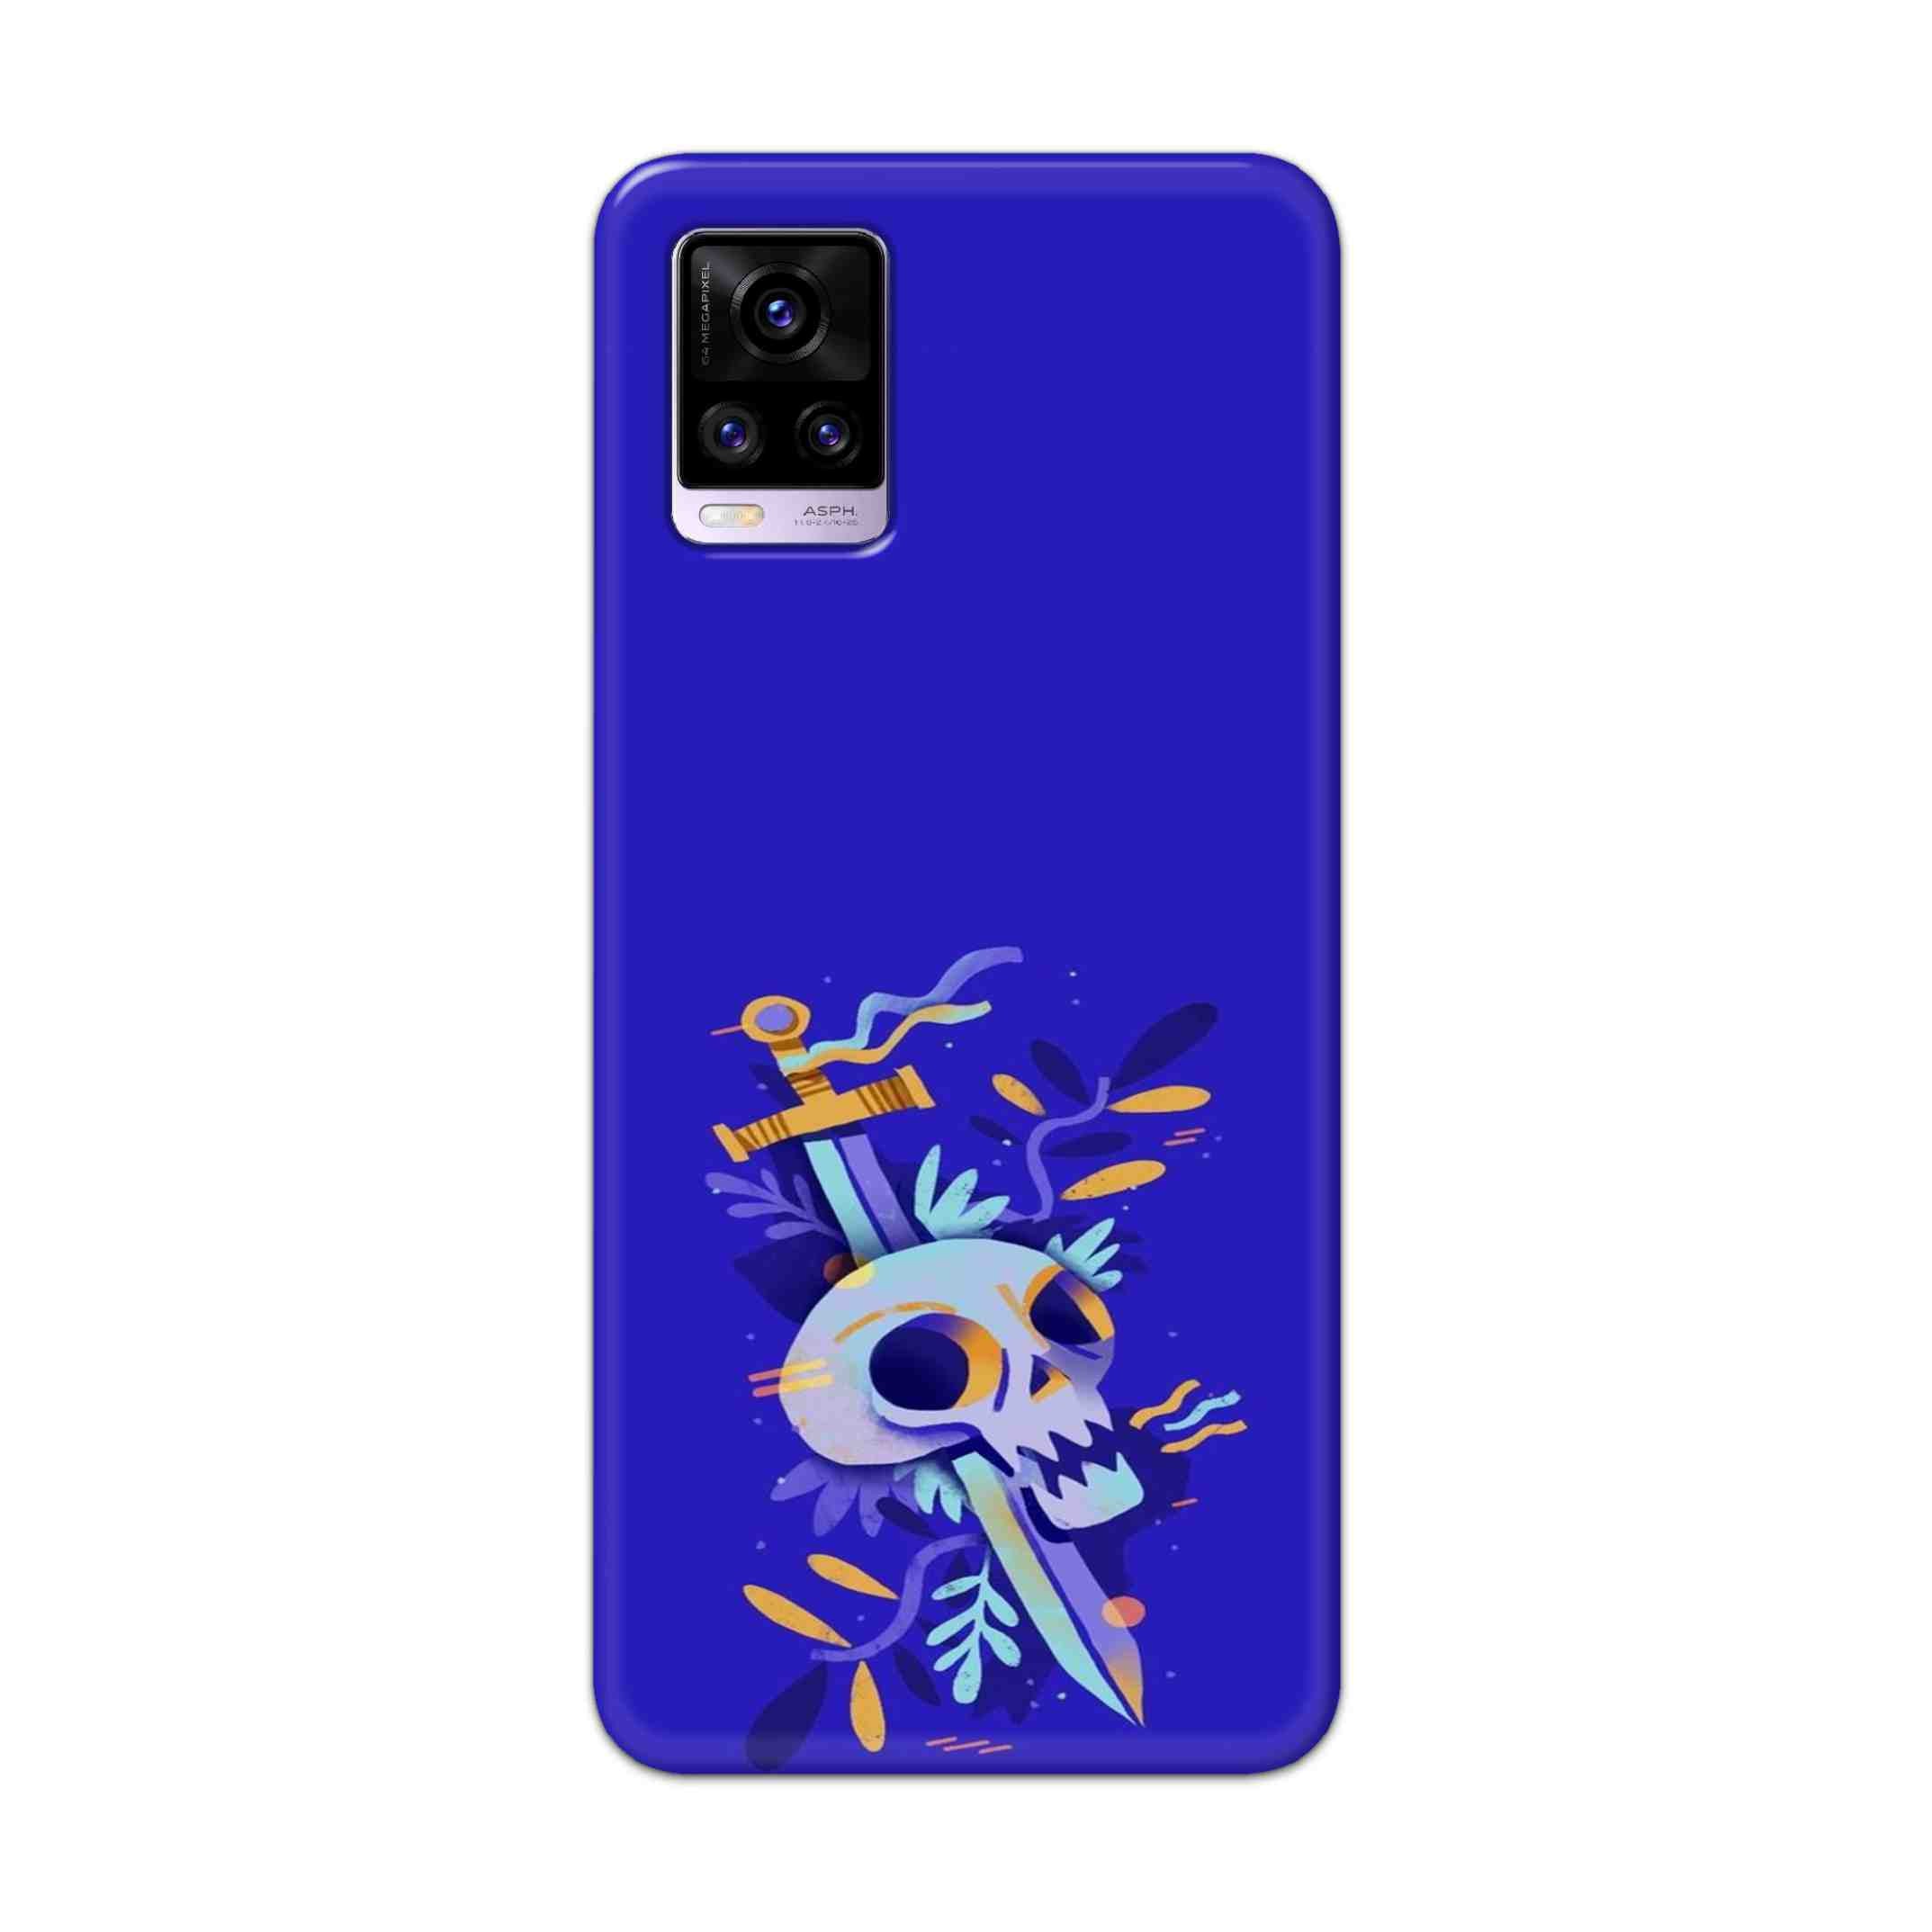 Buy Blue Skull Hard Back Mobile Phone Case Cover For Vivo V20 Online